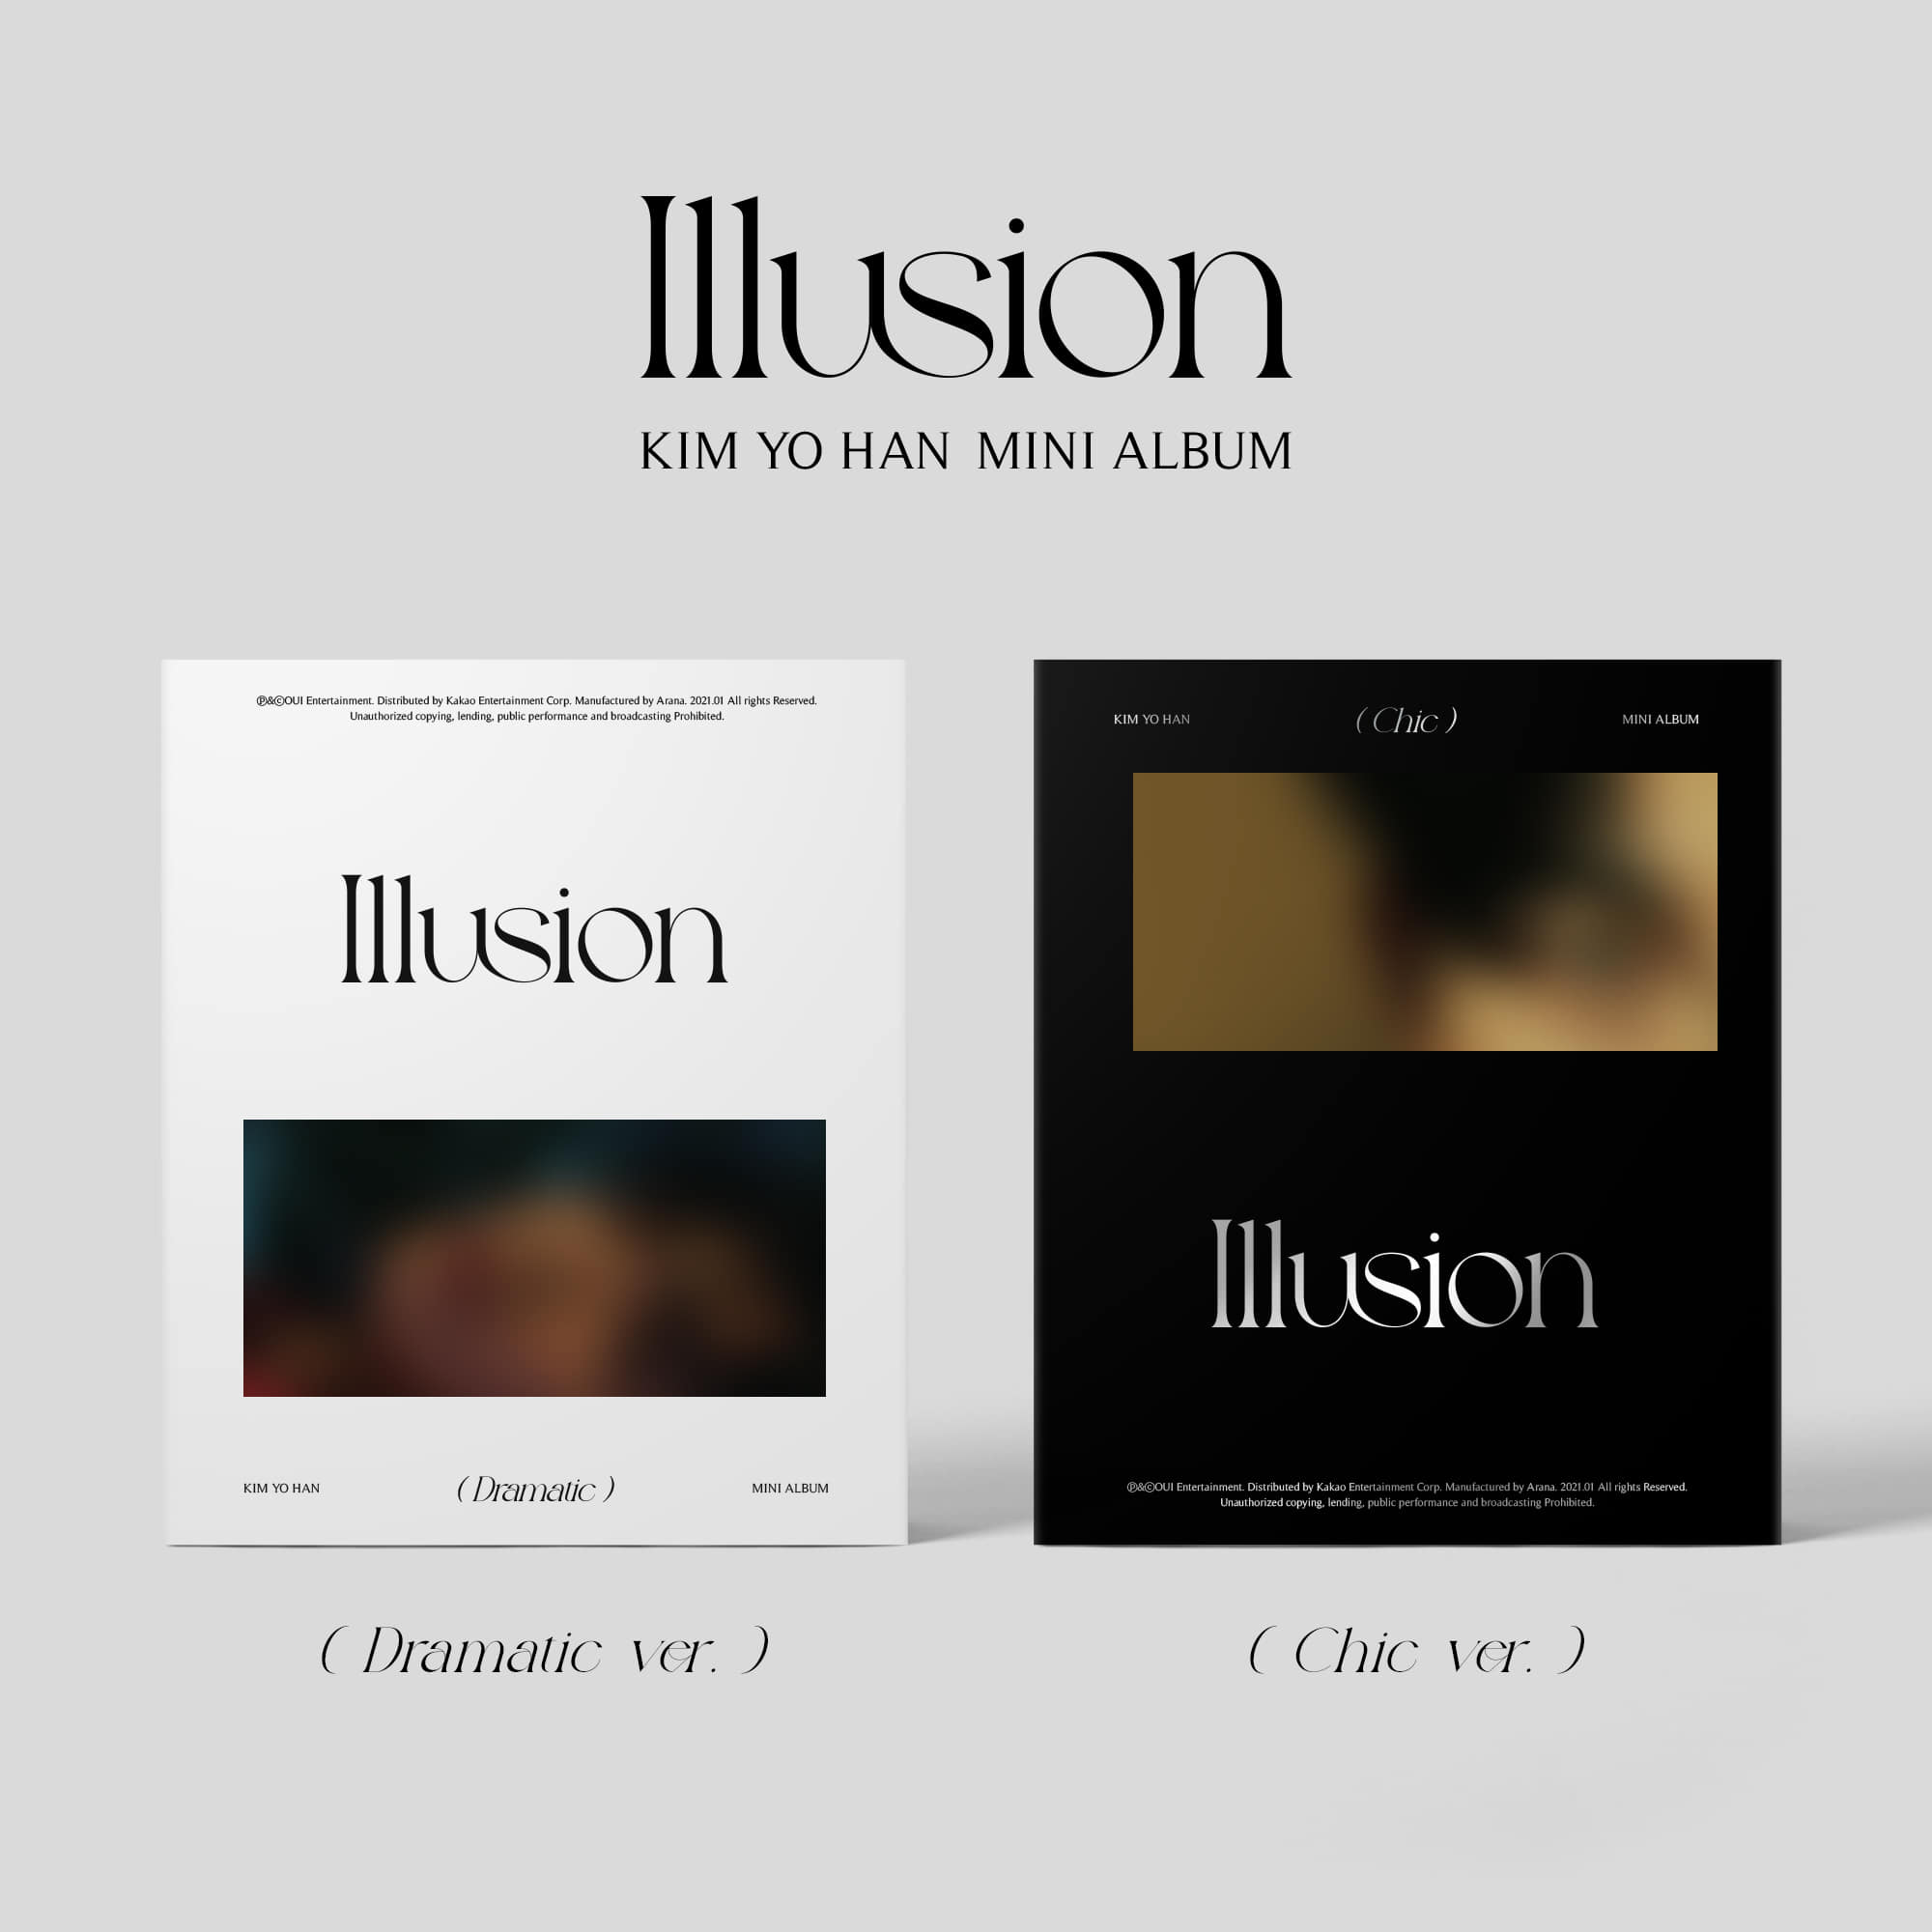 김요한(KIM YO HAN) - 미니 앨범 [Illusion] (2CD SET)케이팝스토어(kpop store)